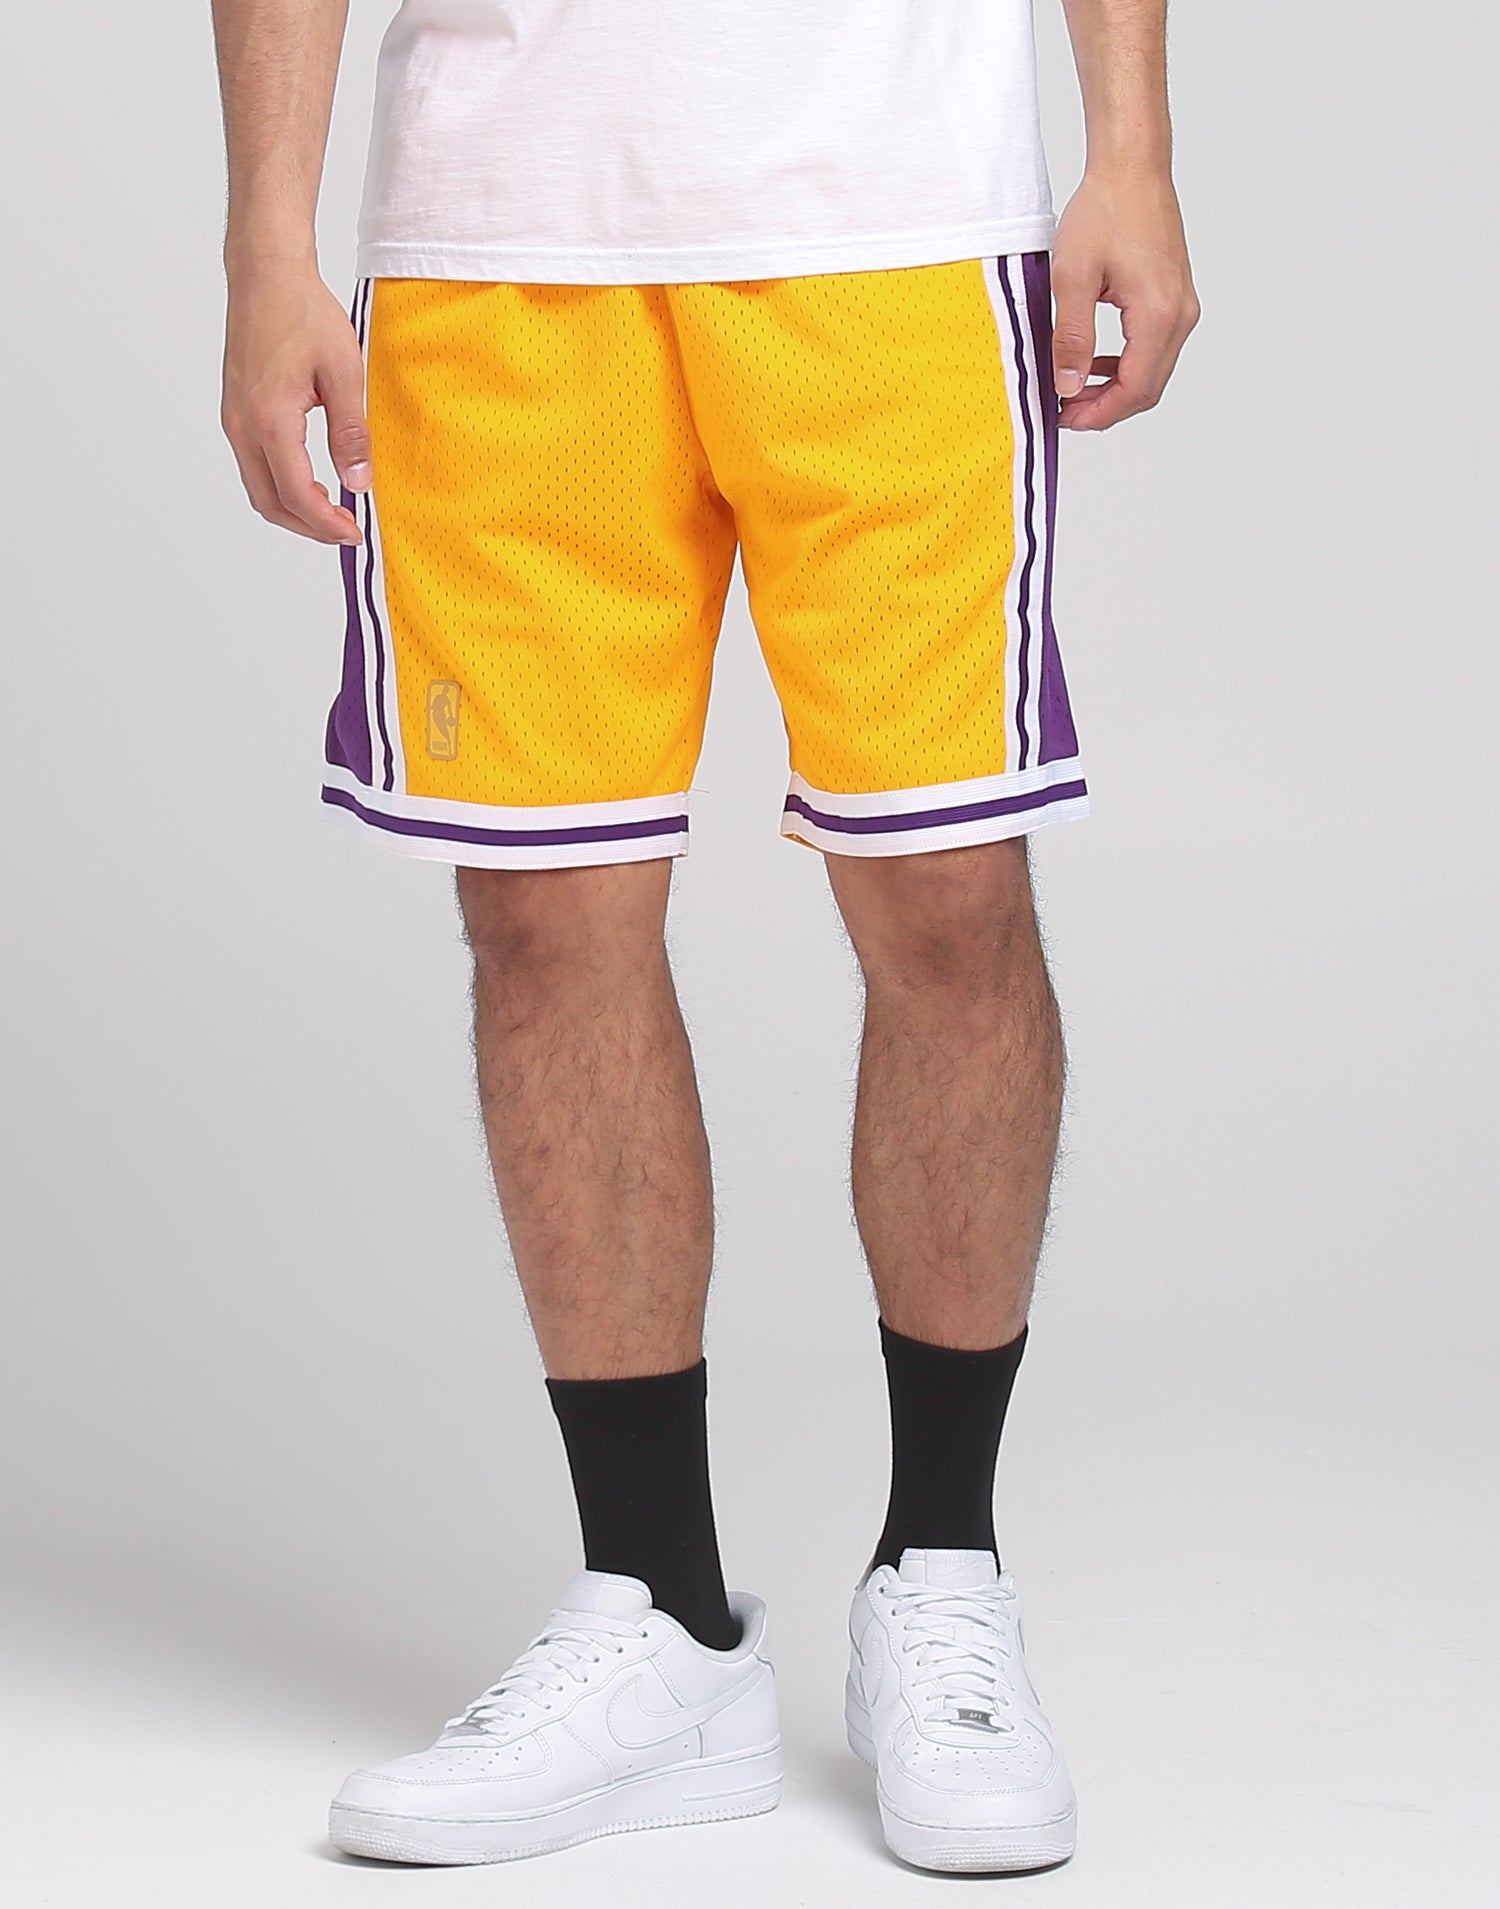 lakers shorts